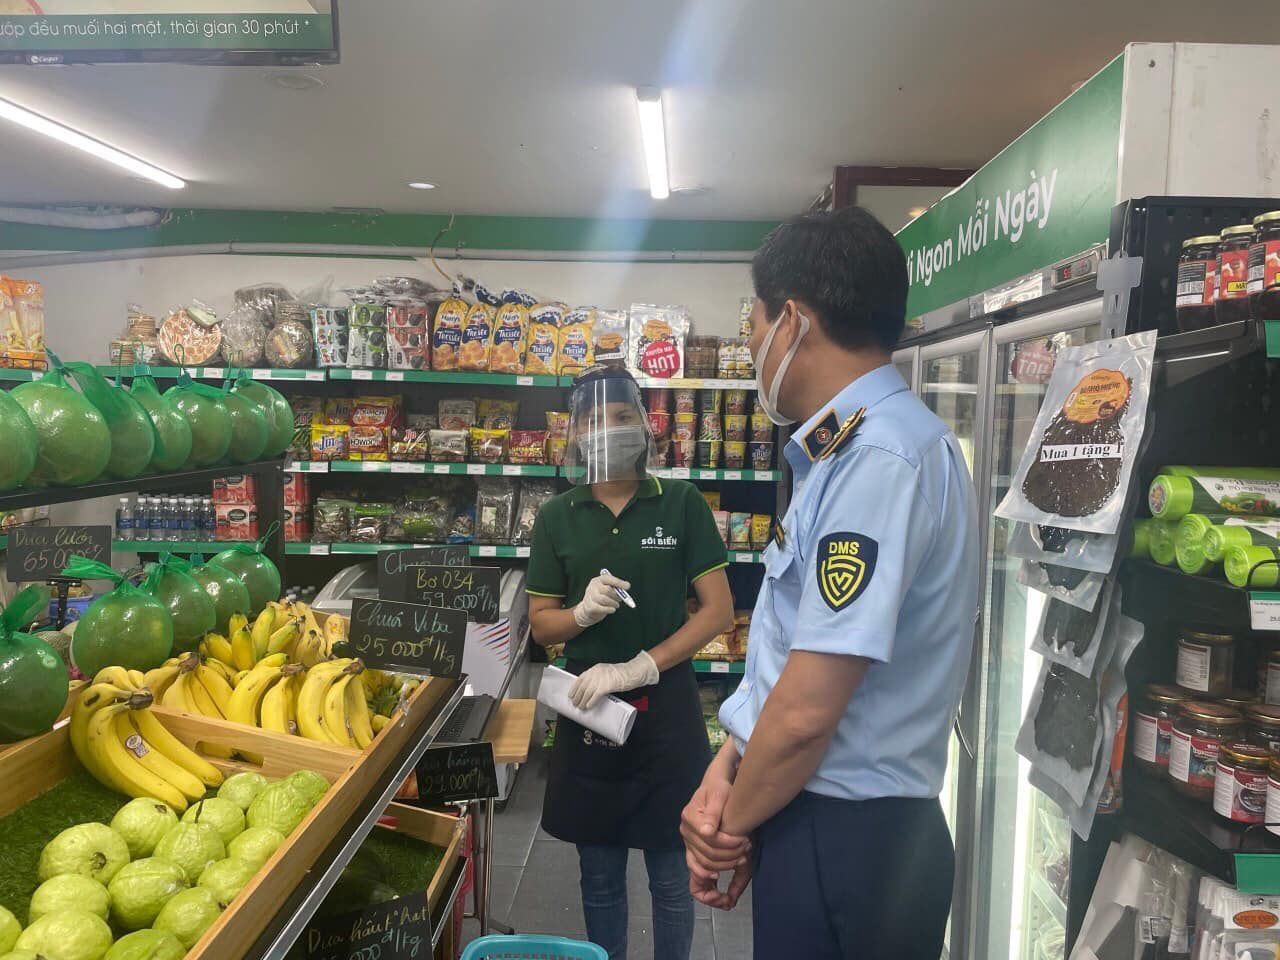 Lực lượng quản lý thị trường kiểm tra tình hình cung ứng hàng hóa tại các cửa hàng, siêu thị trên địa bàn Thành phố Hà Nội